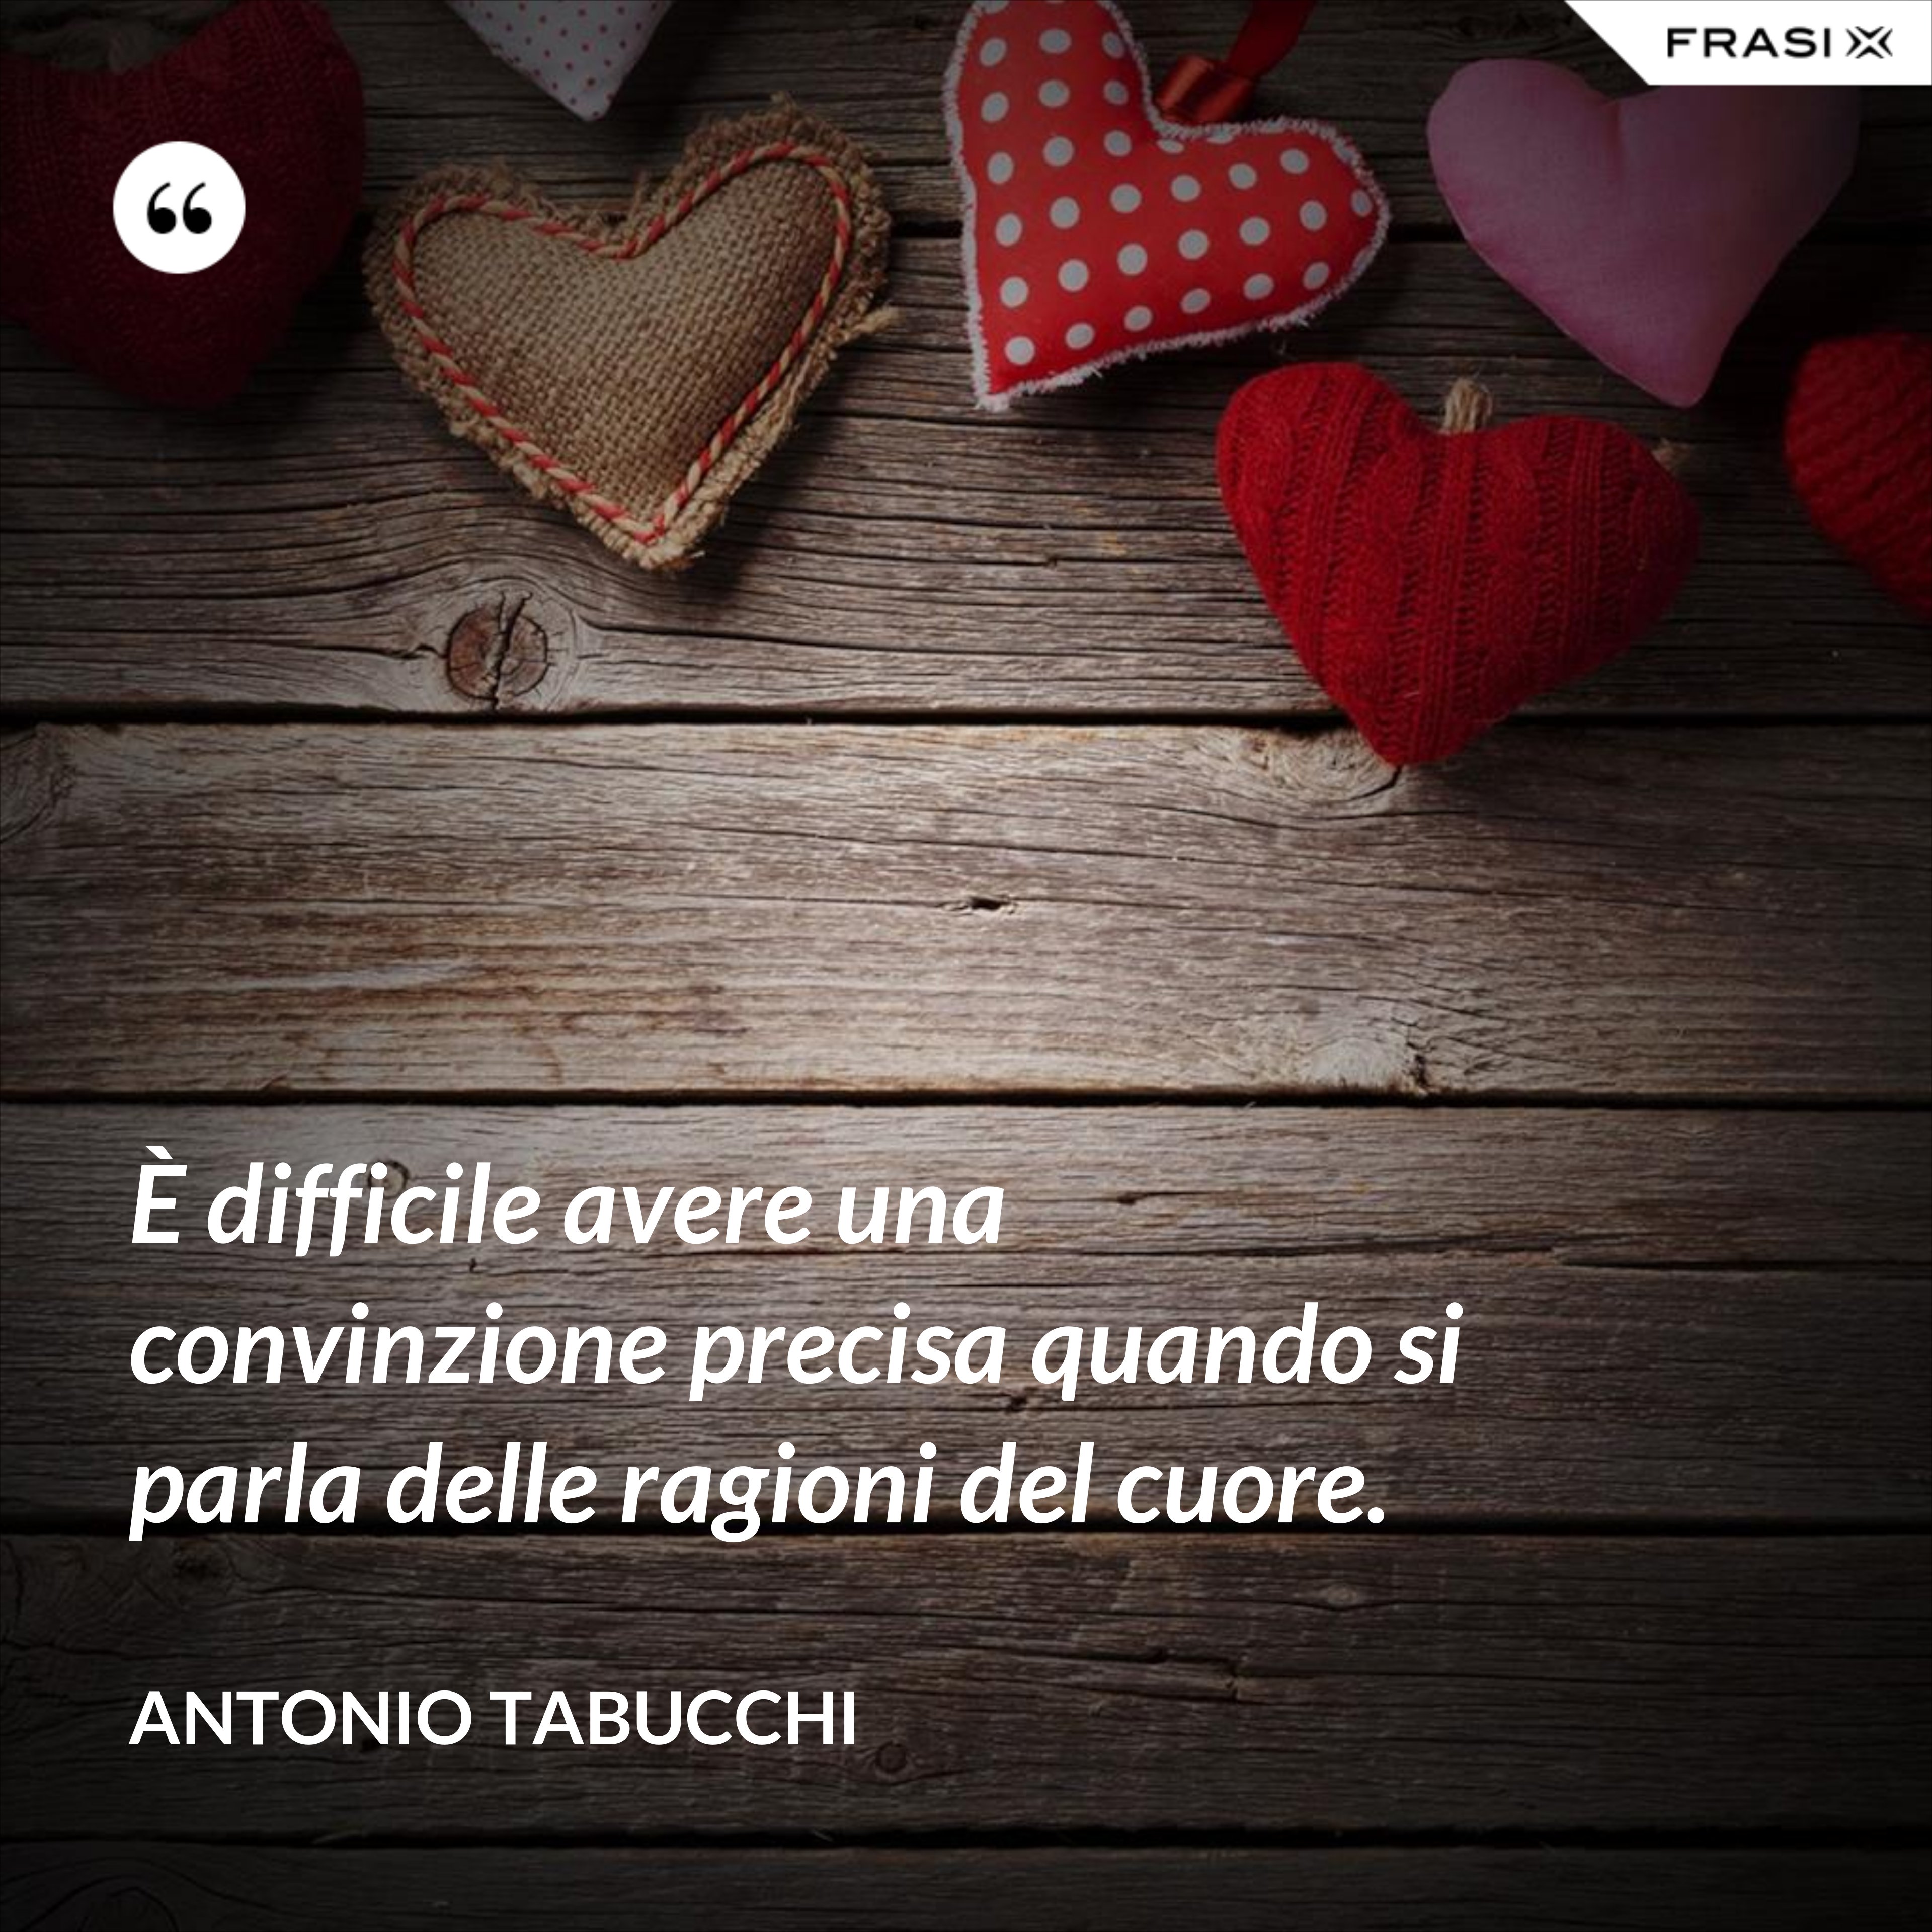 È difficile avere una convinzione precisa quando si parla delle ragioni del cuore. - Antonio Tabucchi